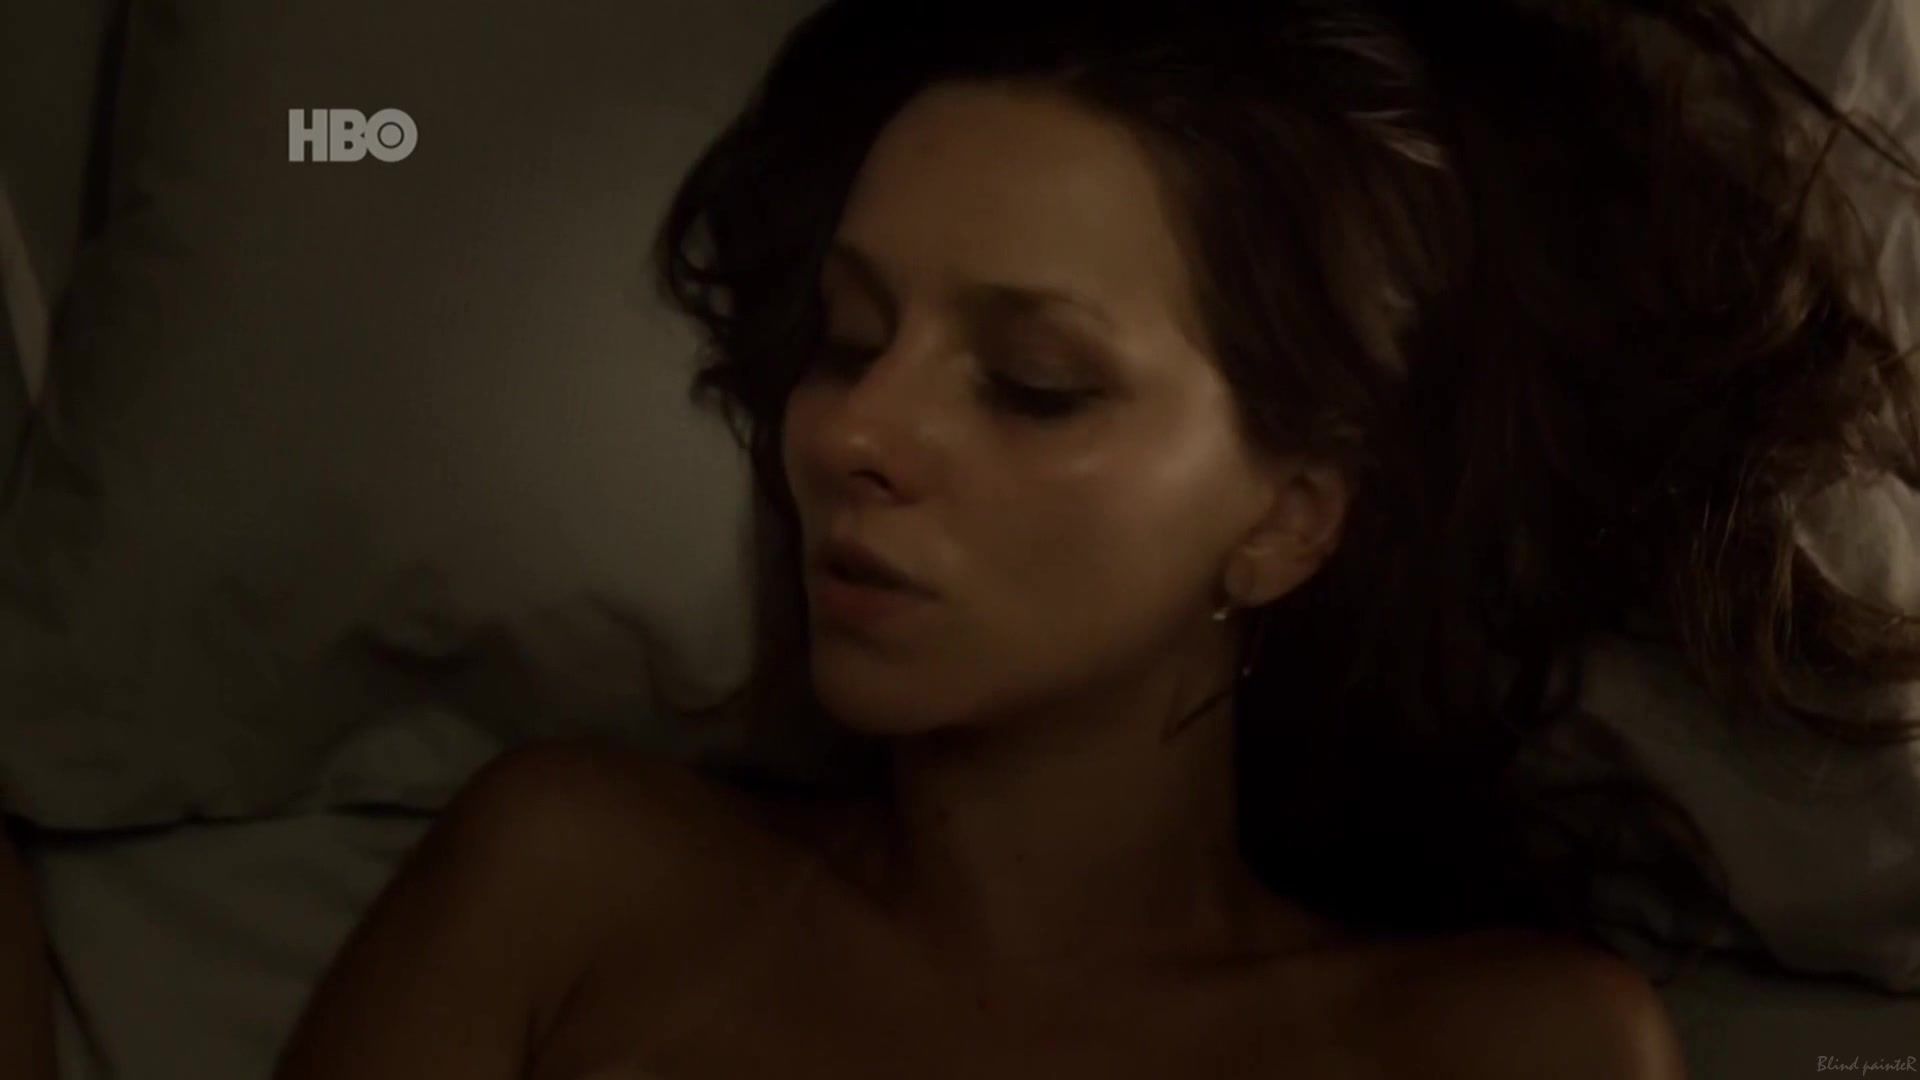 For Sex Scene Leticia Tomazella nude - O Negocio S02E05 (2014) Gay Straight